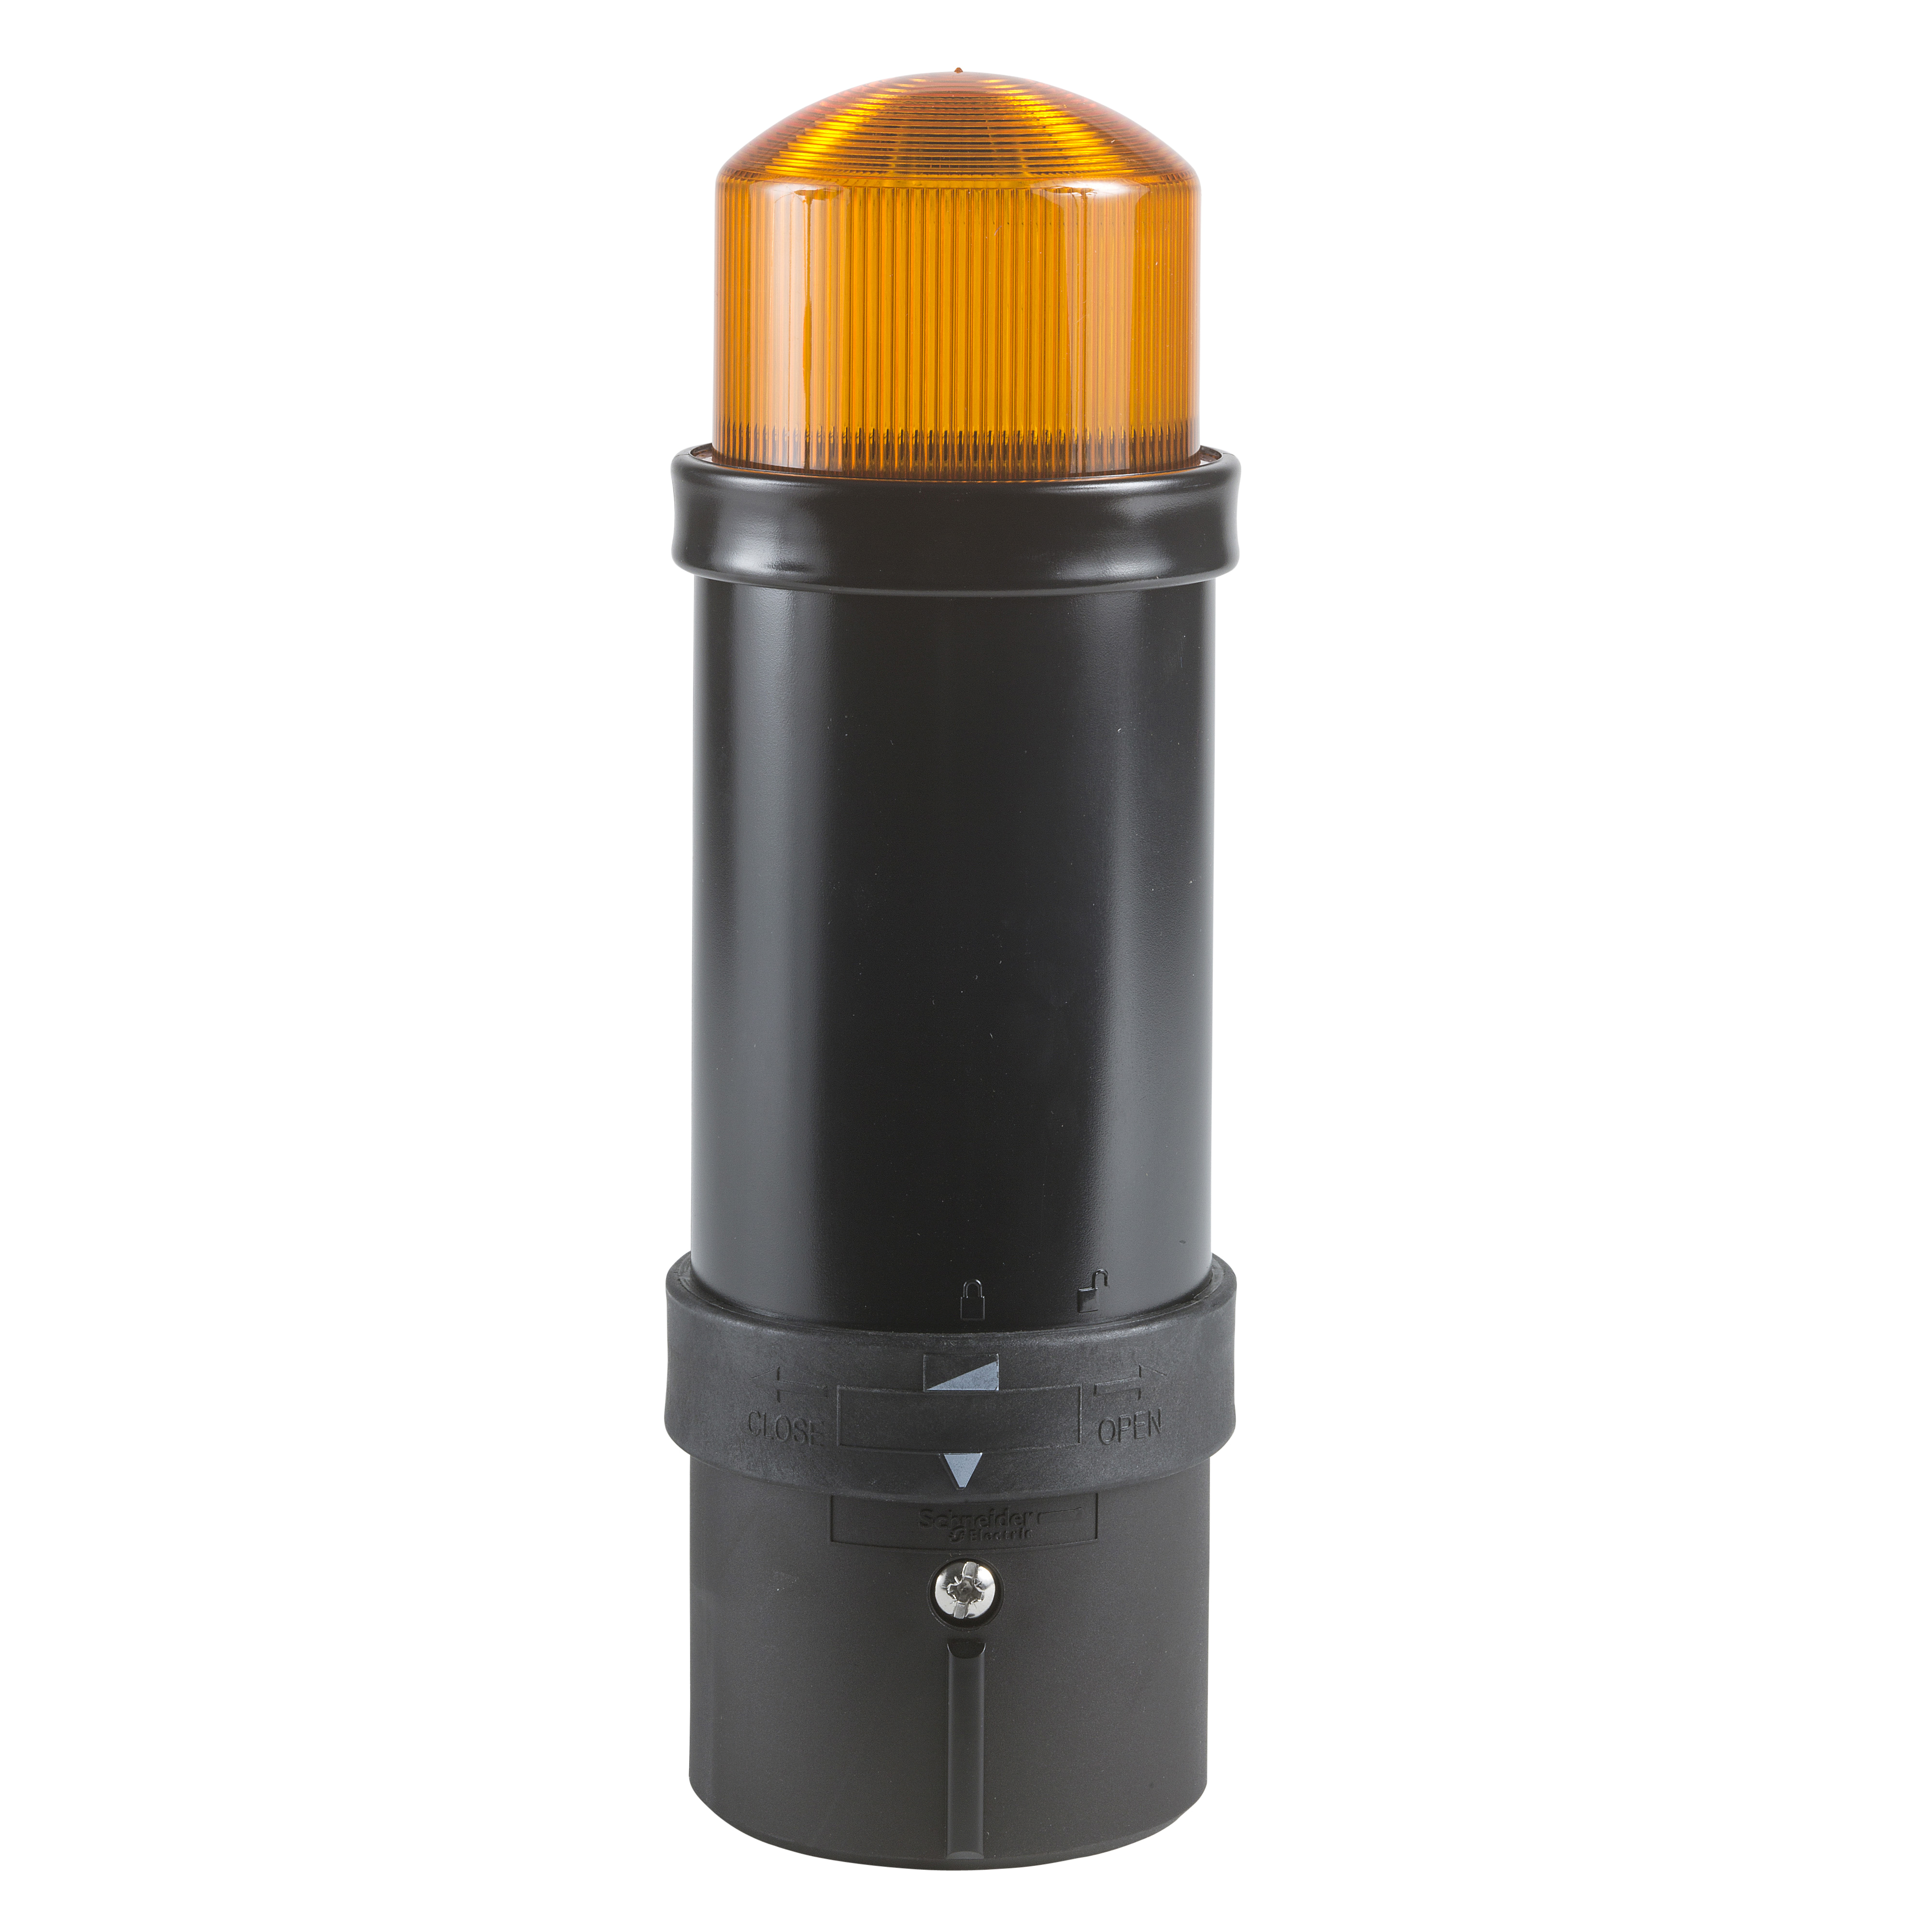 Illuminated beacon, Harmony XVB, plastic, orange, 70mm, flashing, integral flash discharge tube, 5 joule, 120V AC